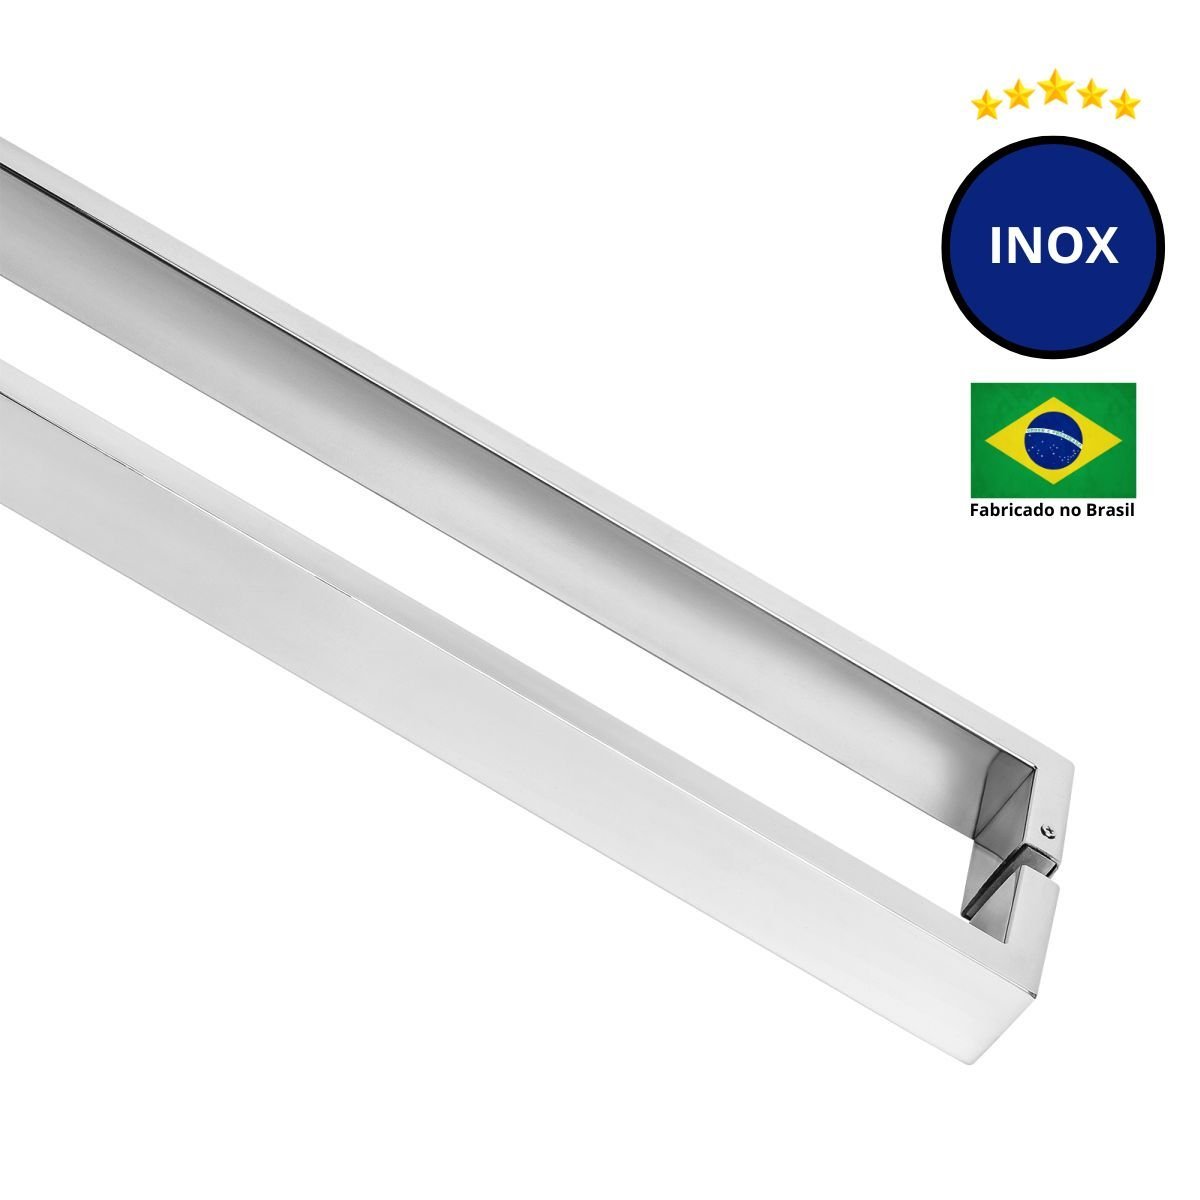 Puxador Porta de Madeira ou Vidro 4cm x 1,5cm Inox - Polido Loja da Indústria 1515mm x 1500mm - 3